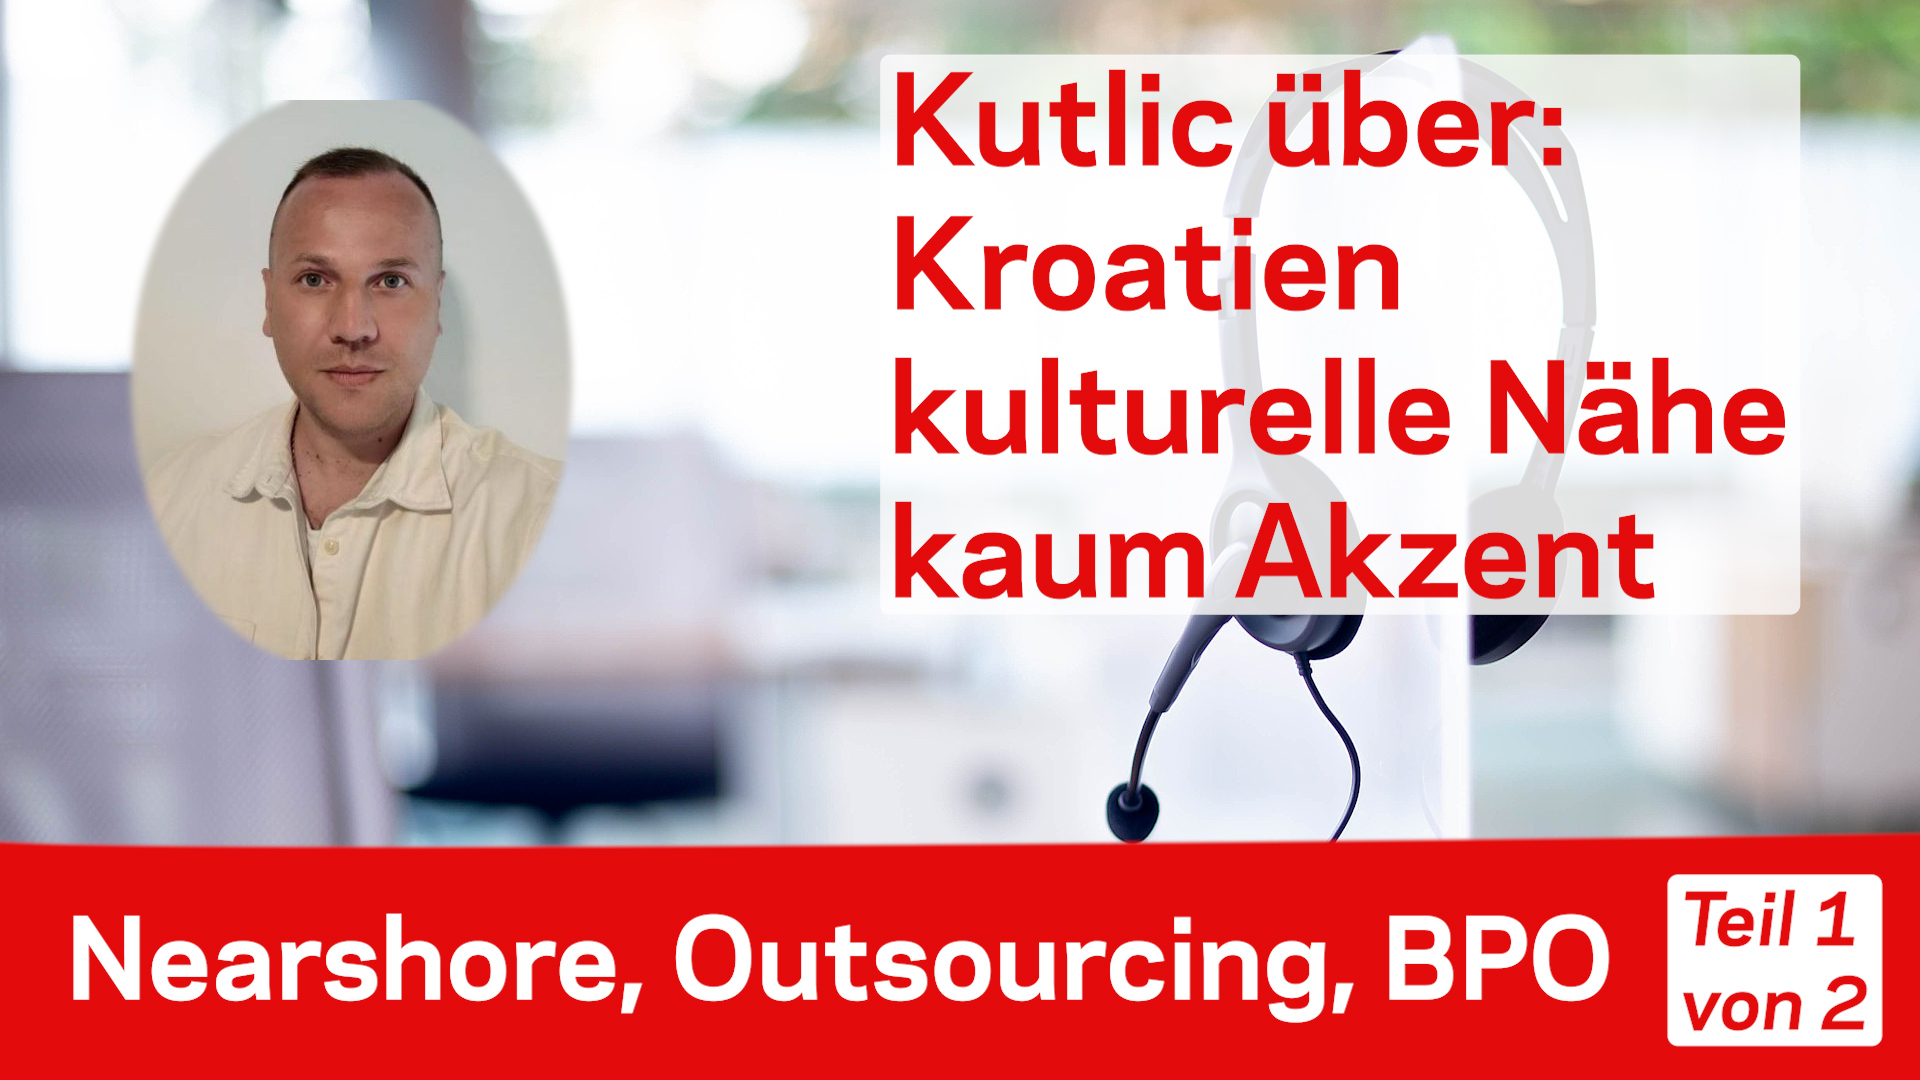 Nearshore Outsourcing BPO Kroatien Mladen Kutlic und Bernhard Gandolf im Video-Tak